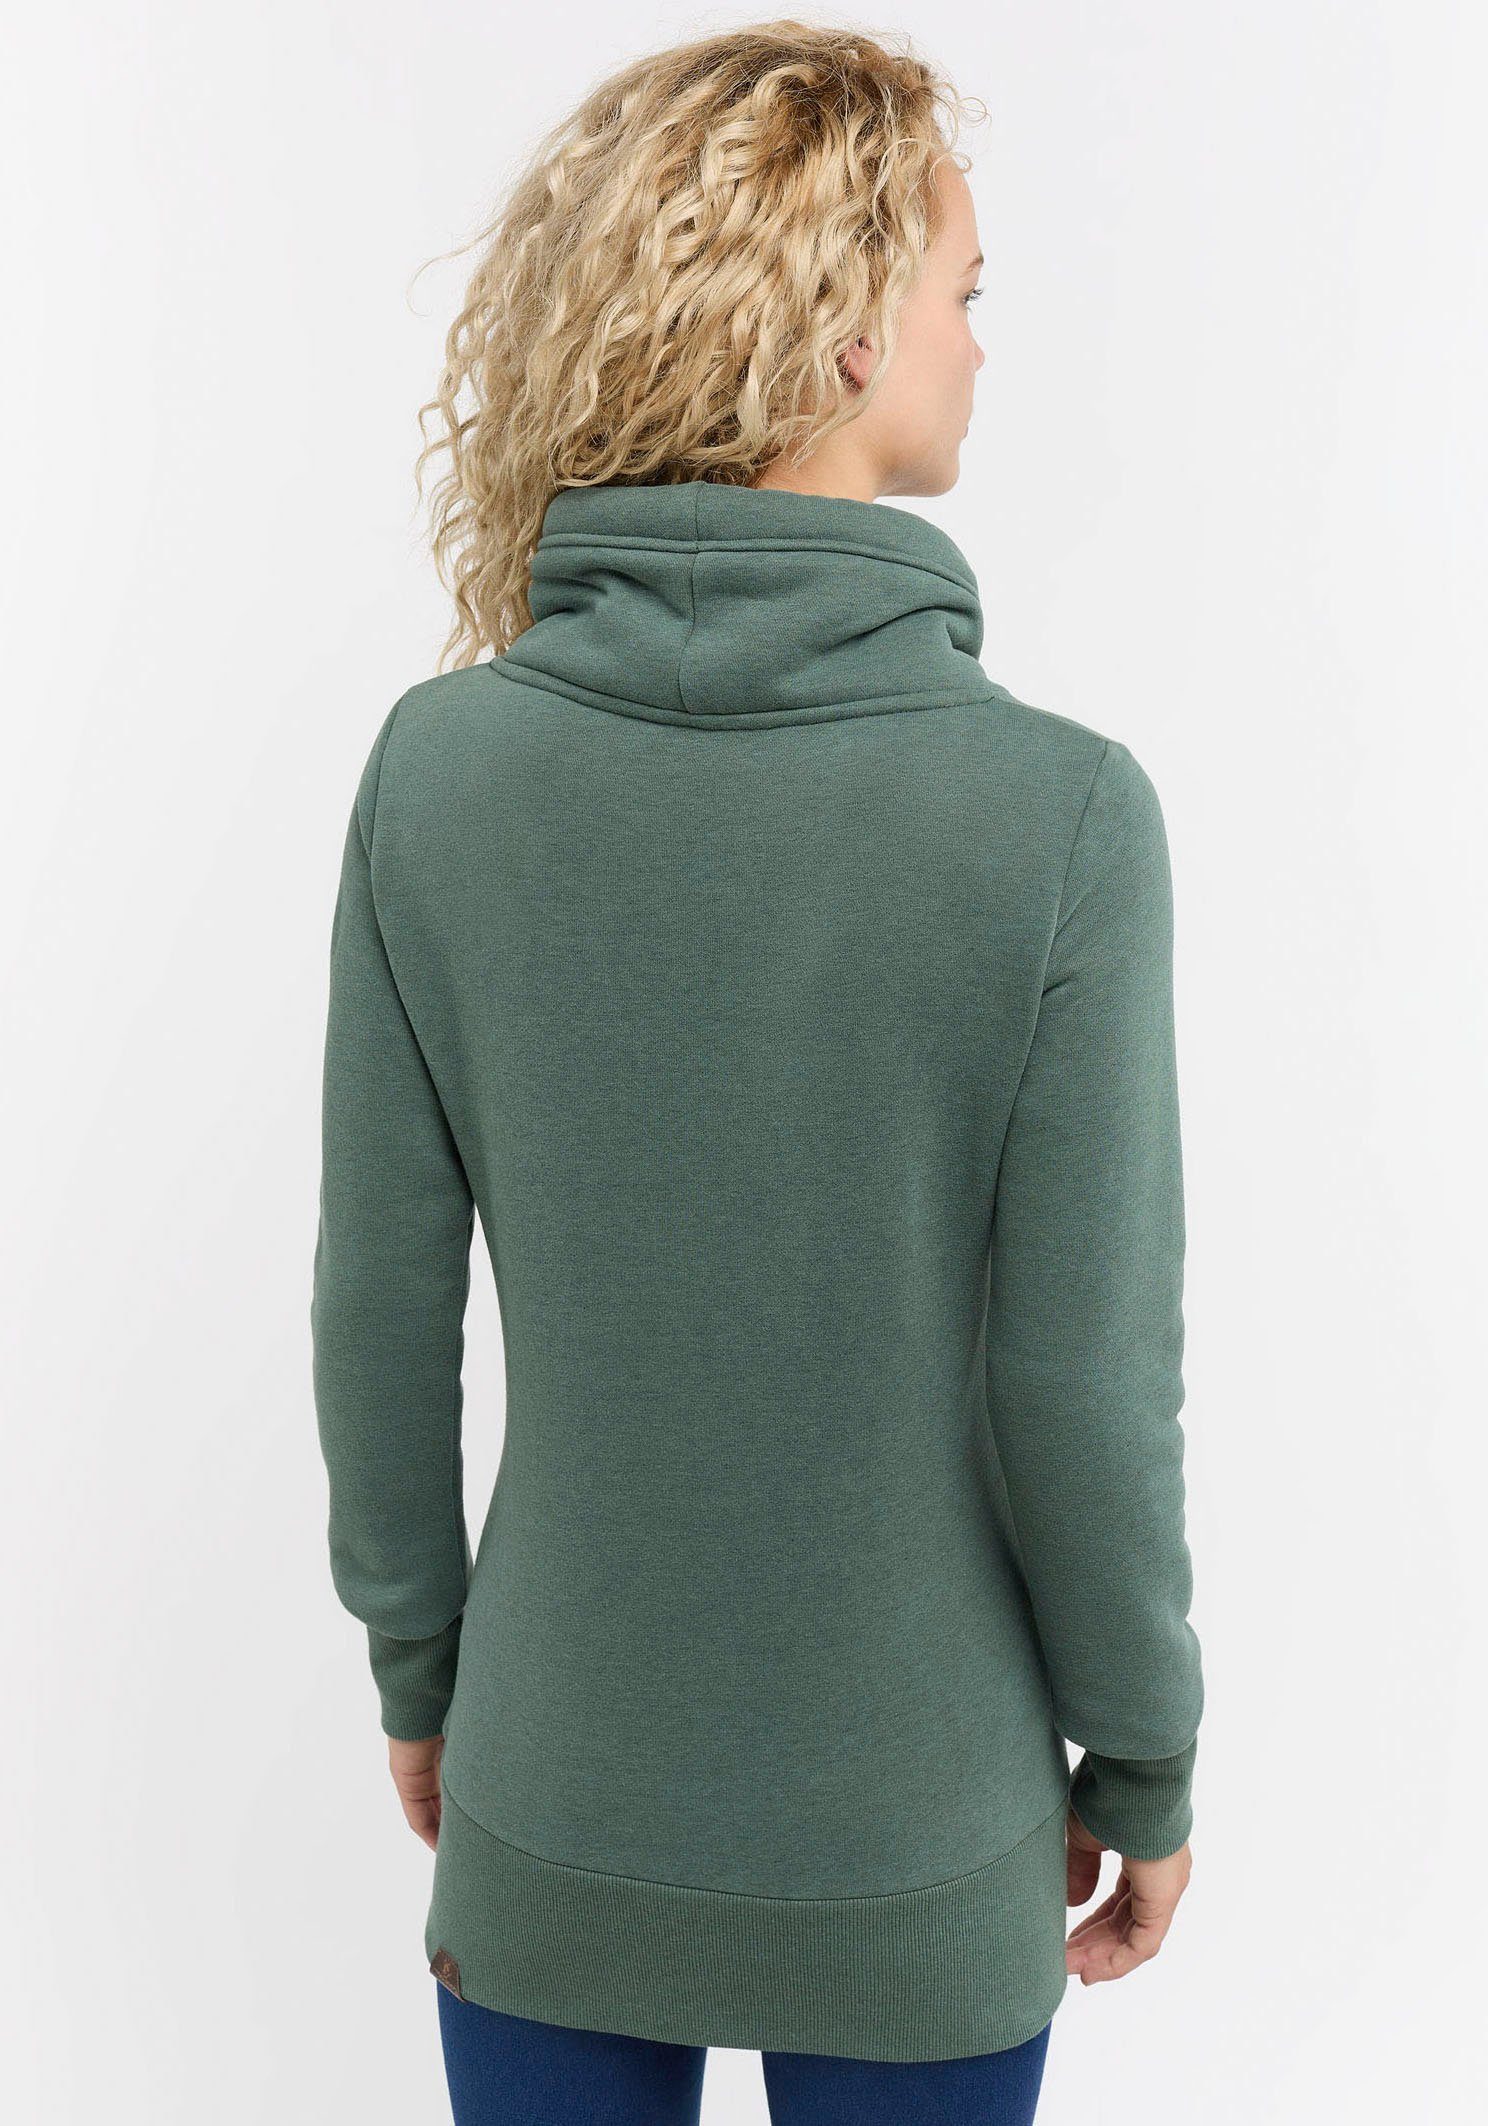 NESKA Ragwear PINE GREEN Sweater